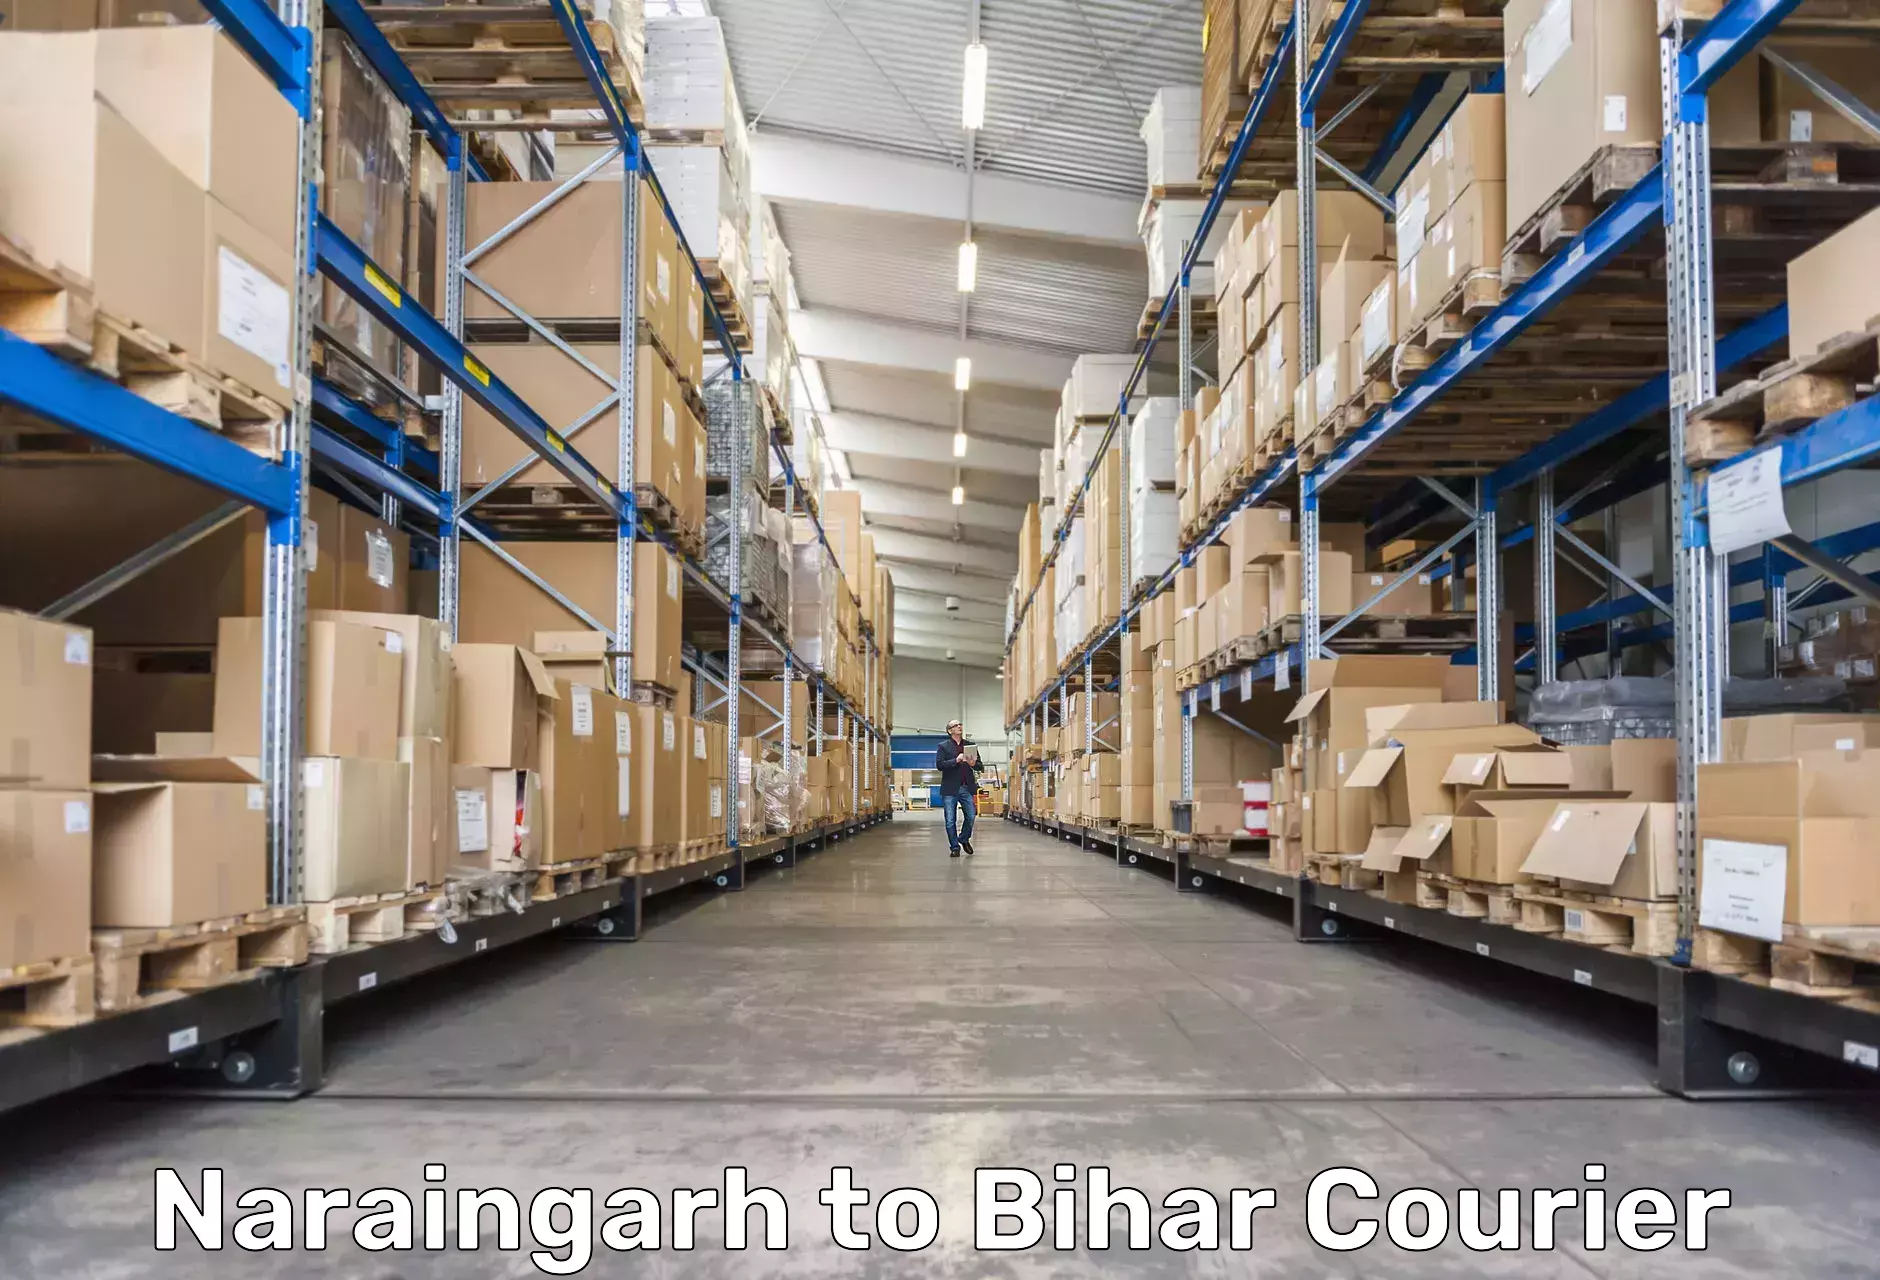 Nationwide shipping capabilities in Naraingarh to Dehri